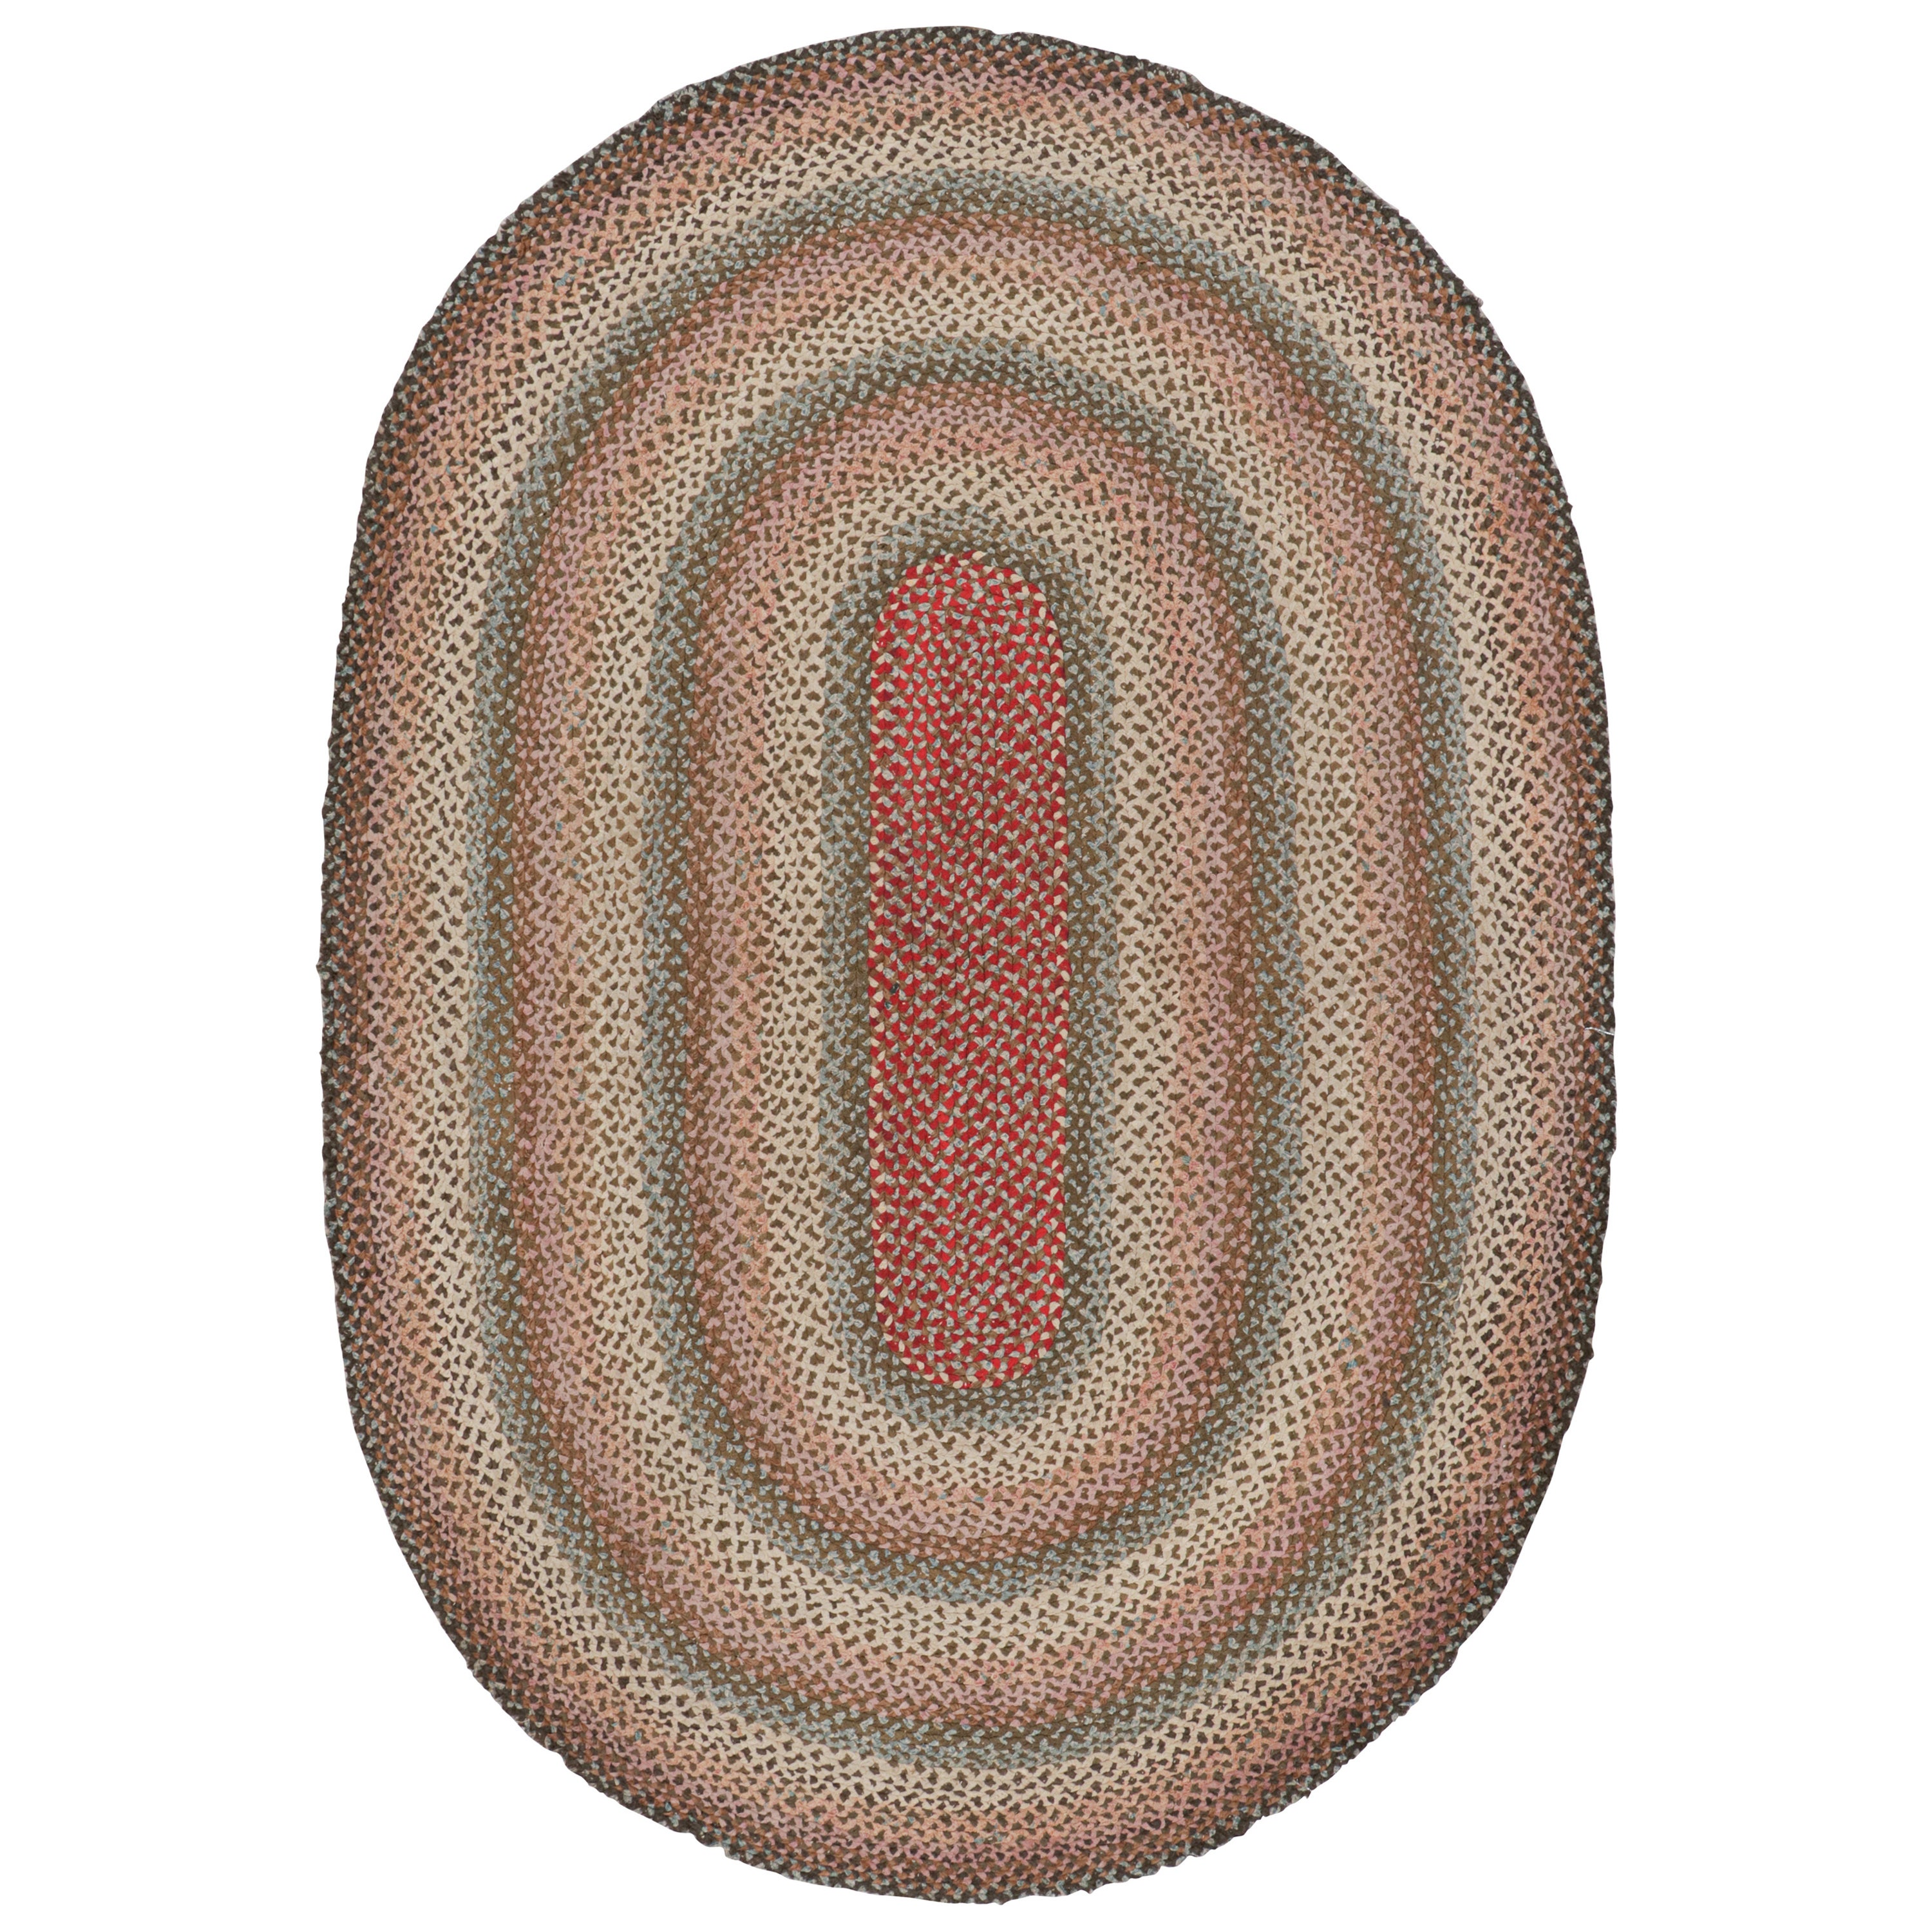 Tapis ovale à capuche antique avec rayures tressées polychromes, de Rug & Kilim